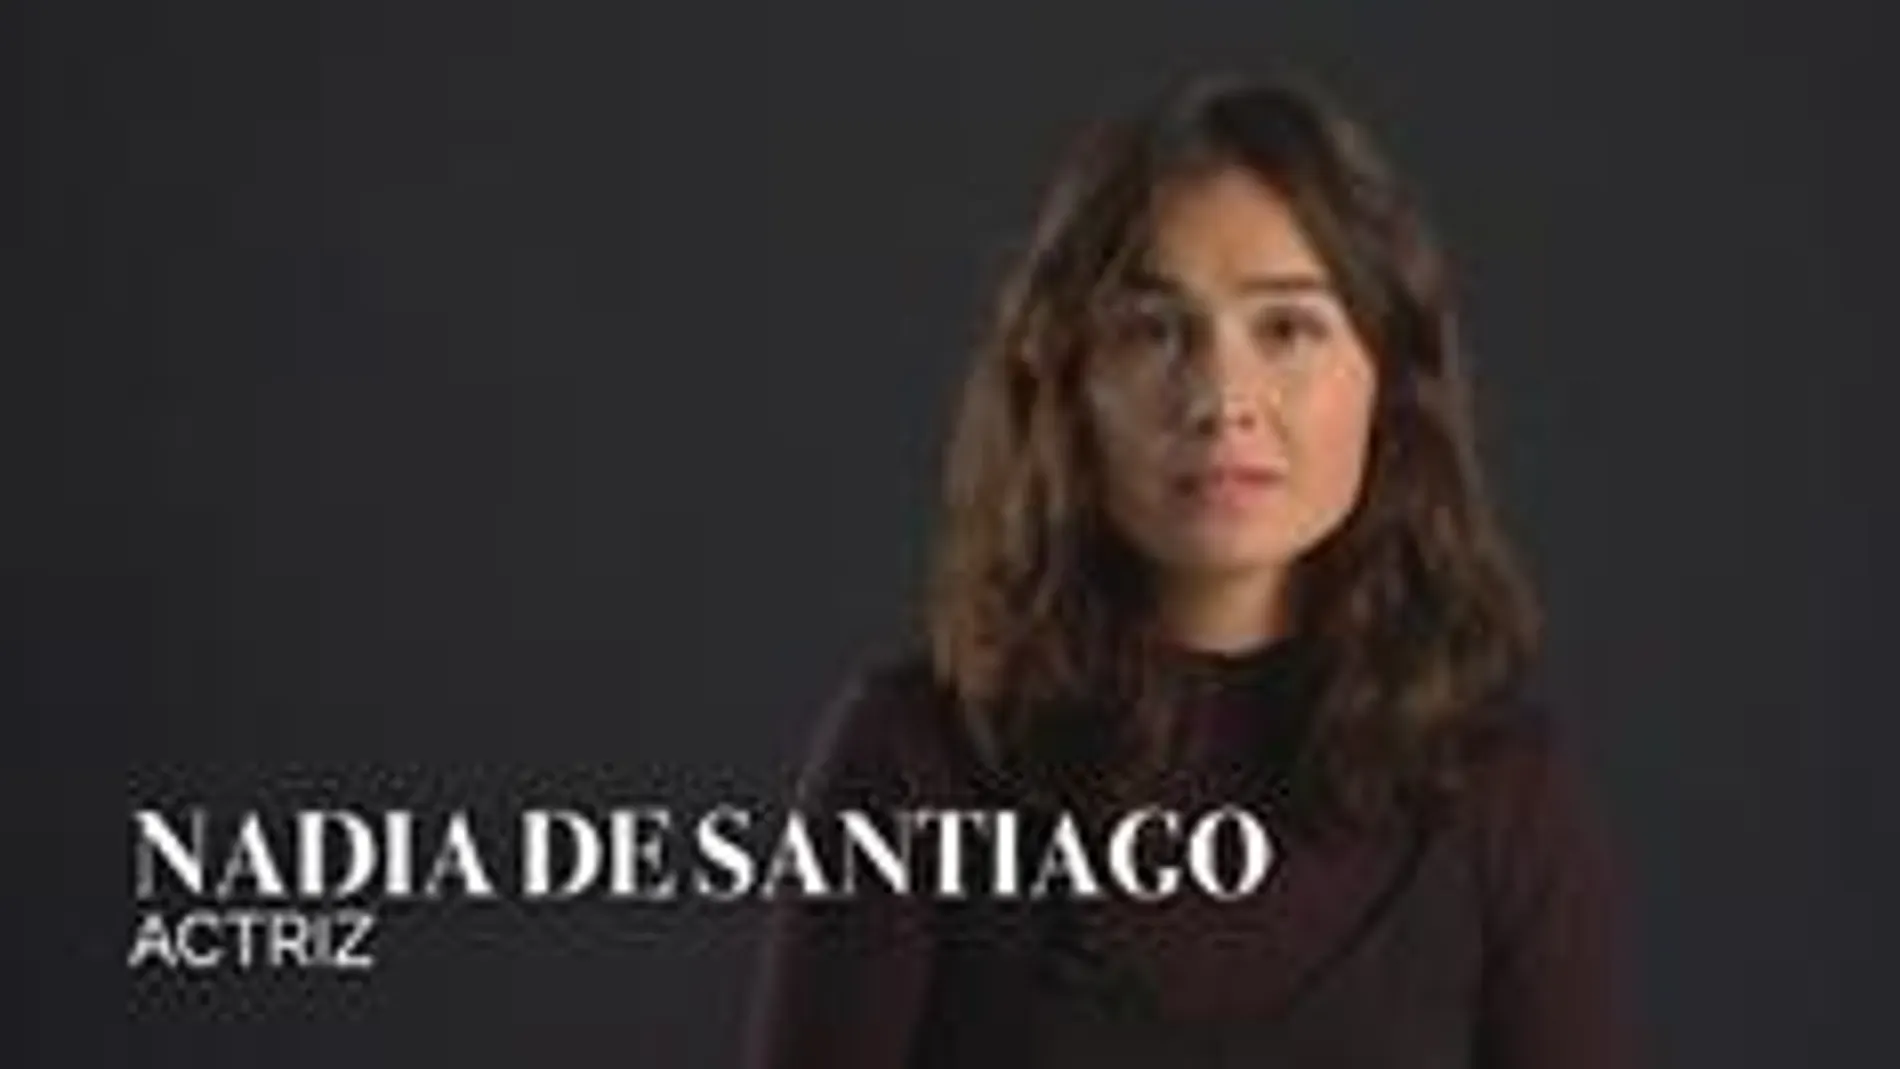 La actriz Nadia de Santiago en uno de los vídeos para la campaña "Si te pasa a ti nos pasa a todos"